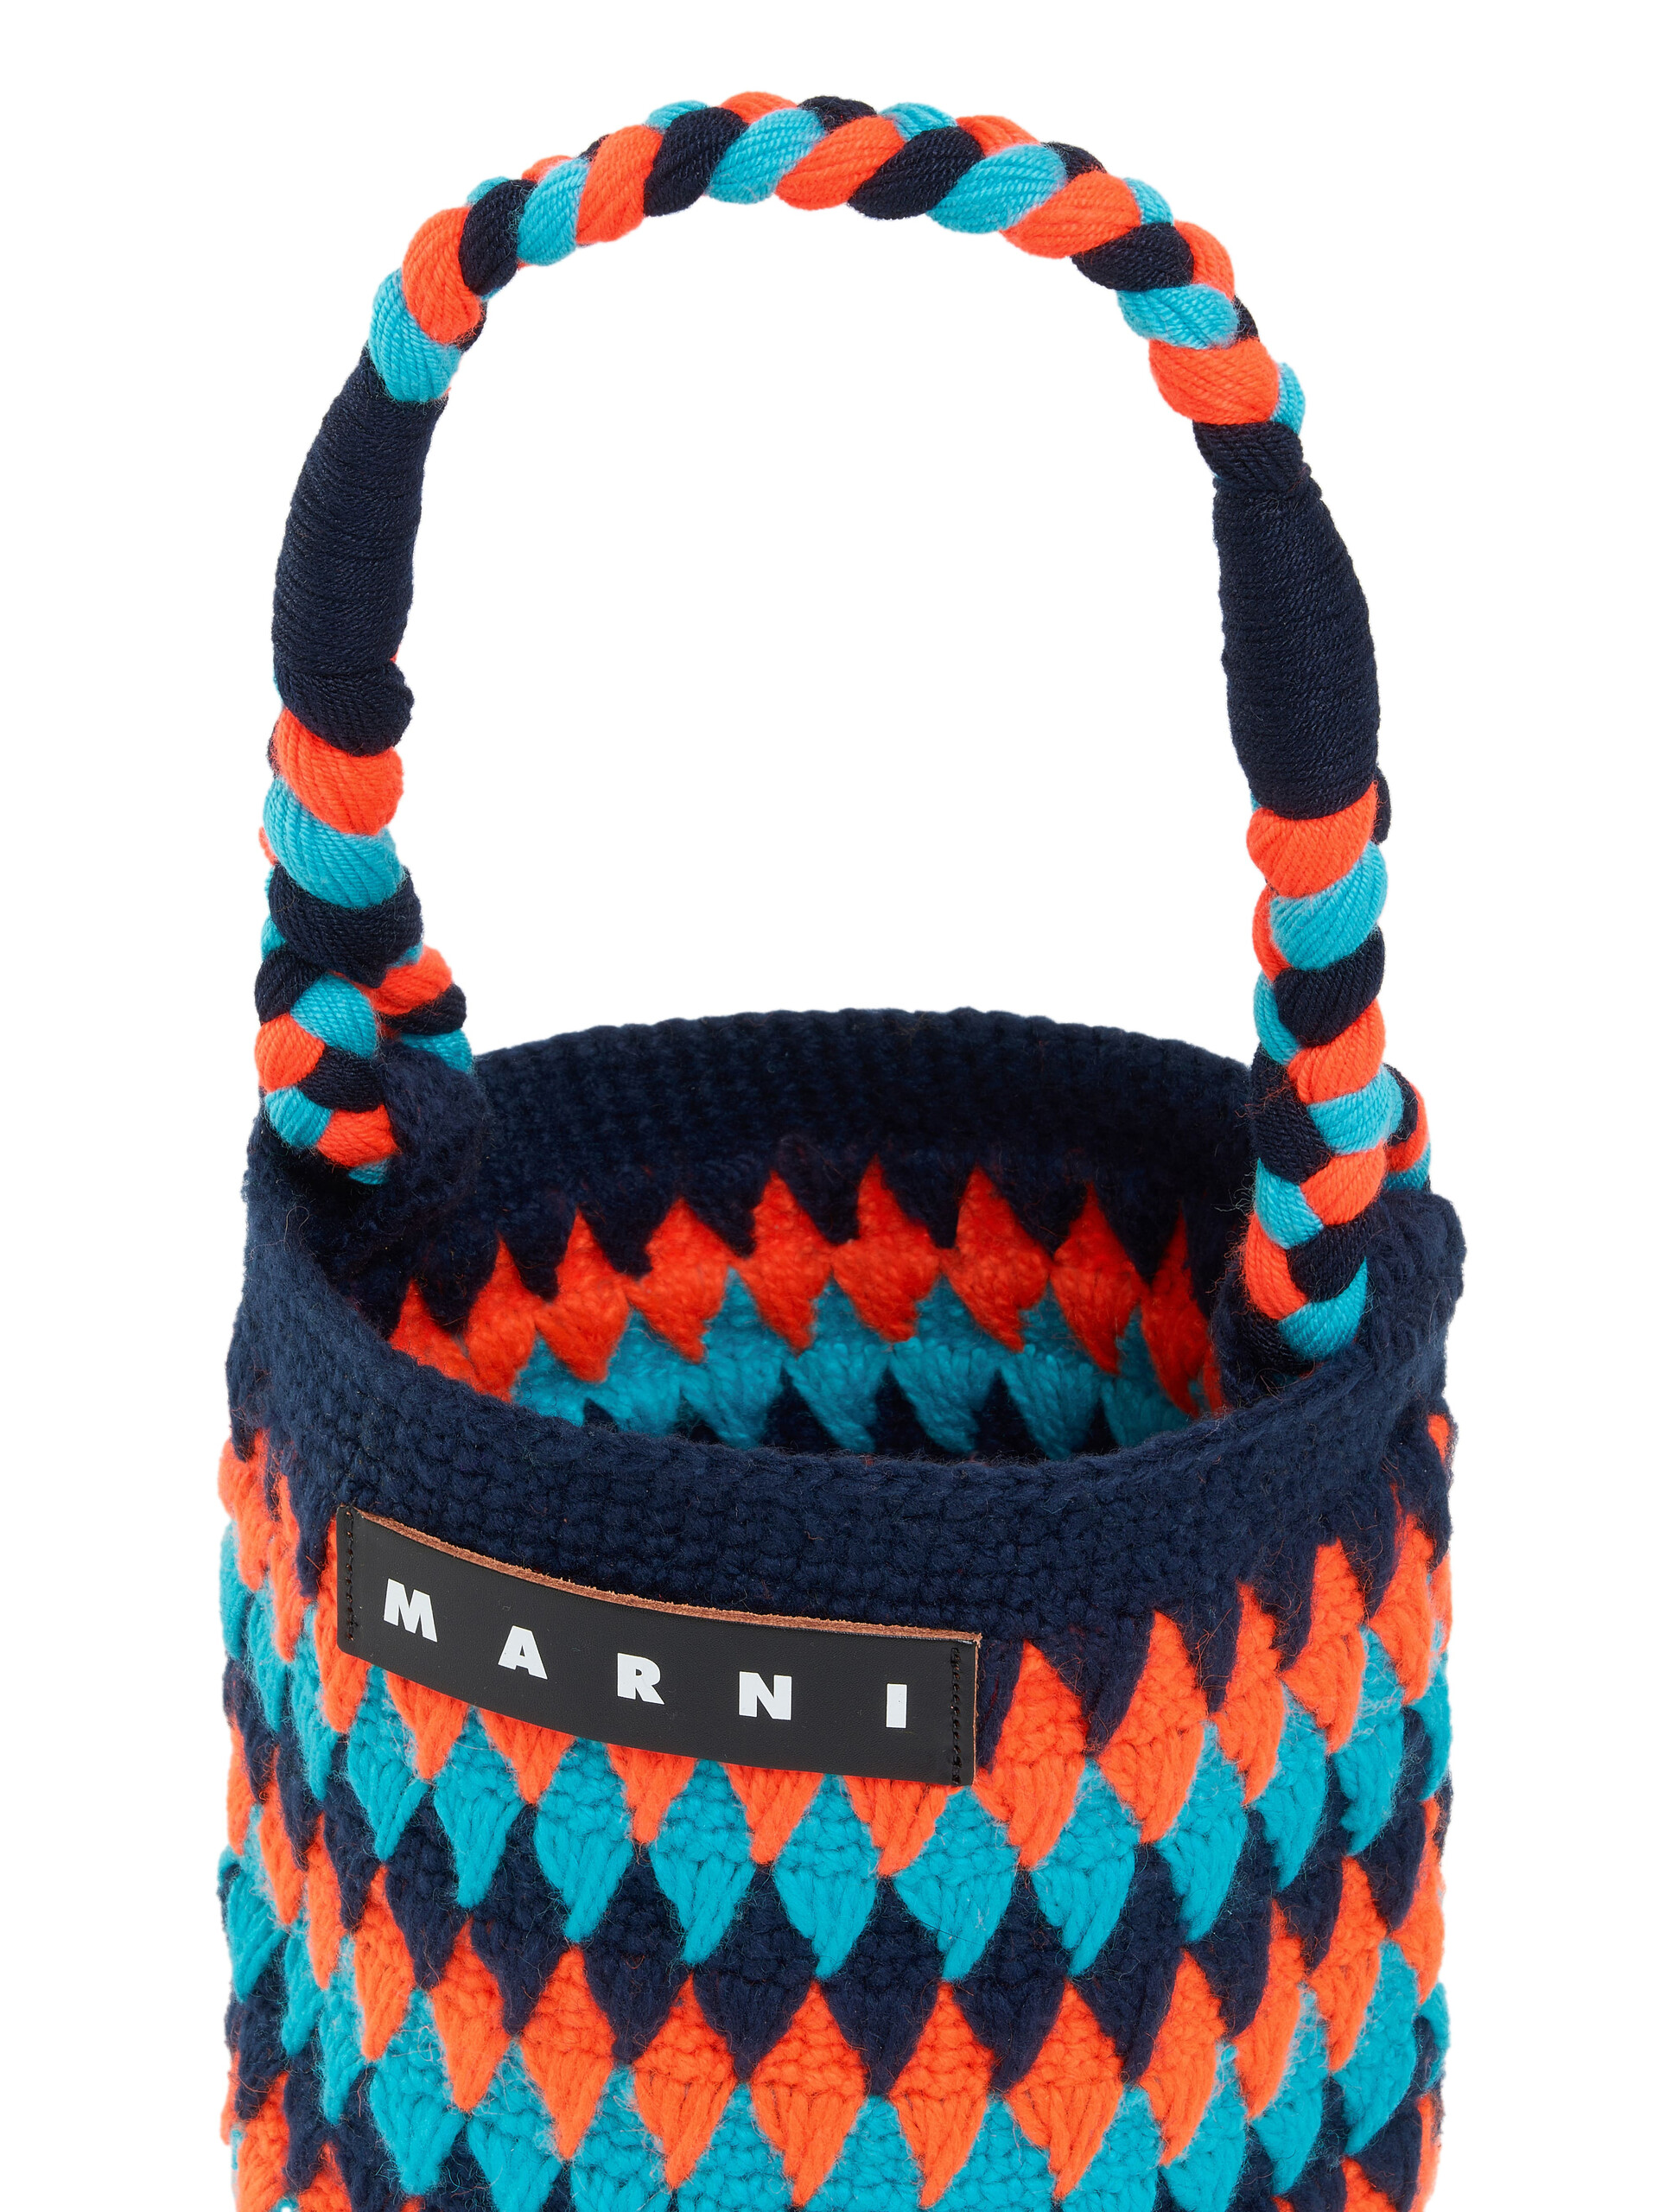 Sac Marni Market Chessboard orange et bleu réalisé au crochet - Sacs cabas - Image 4